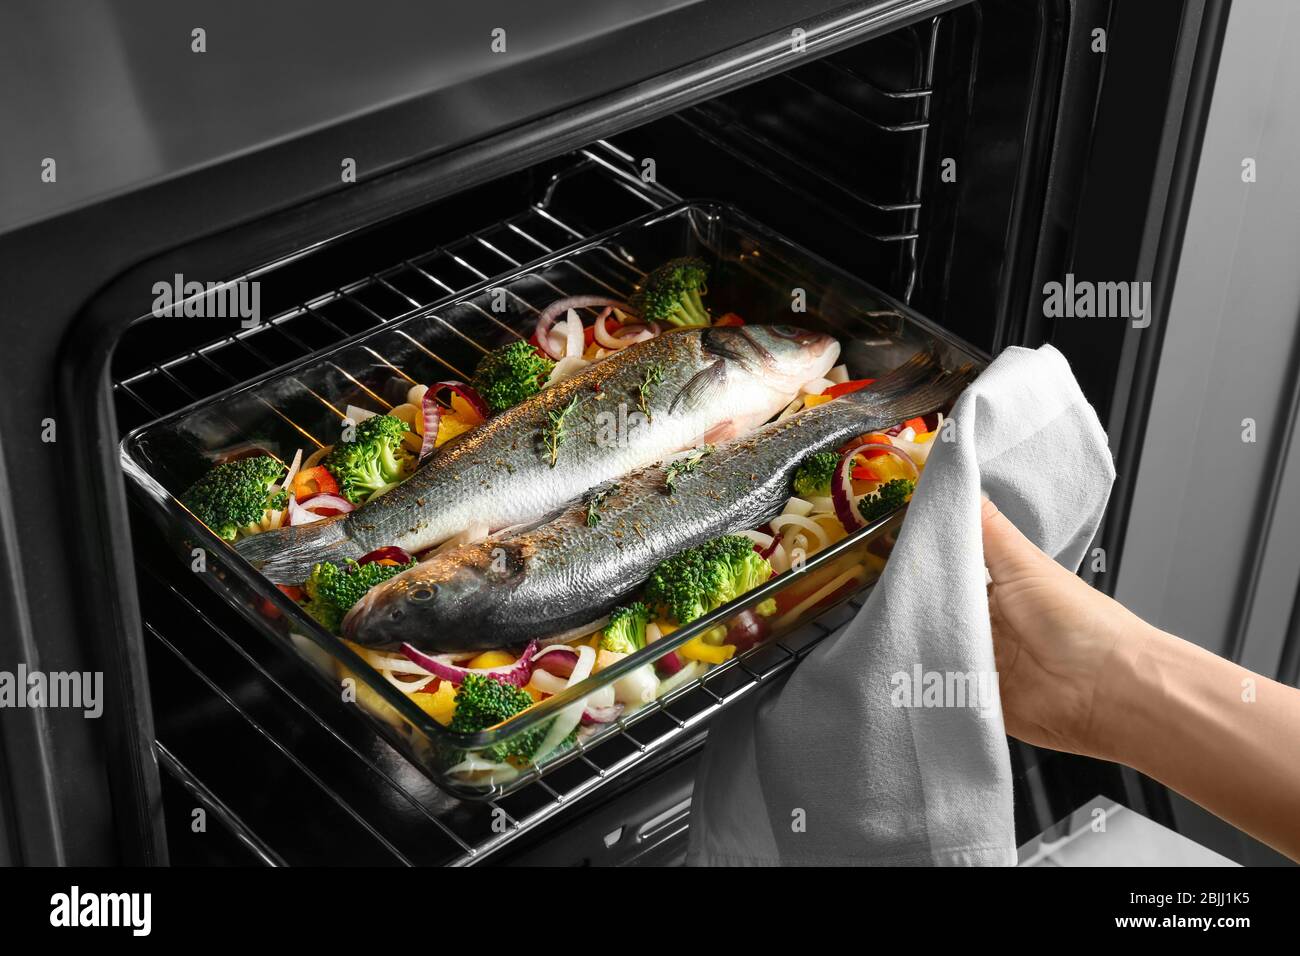 Frau, die Backblech mit Fisch und Gemüse in den Ofen stellt Stockfotografie  - Alamy